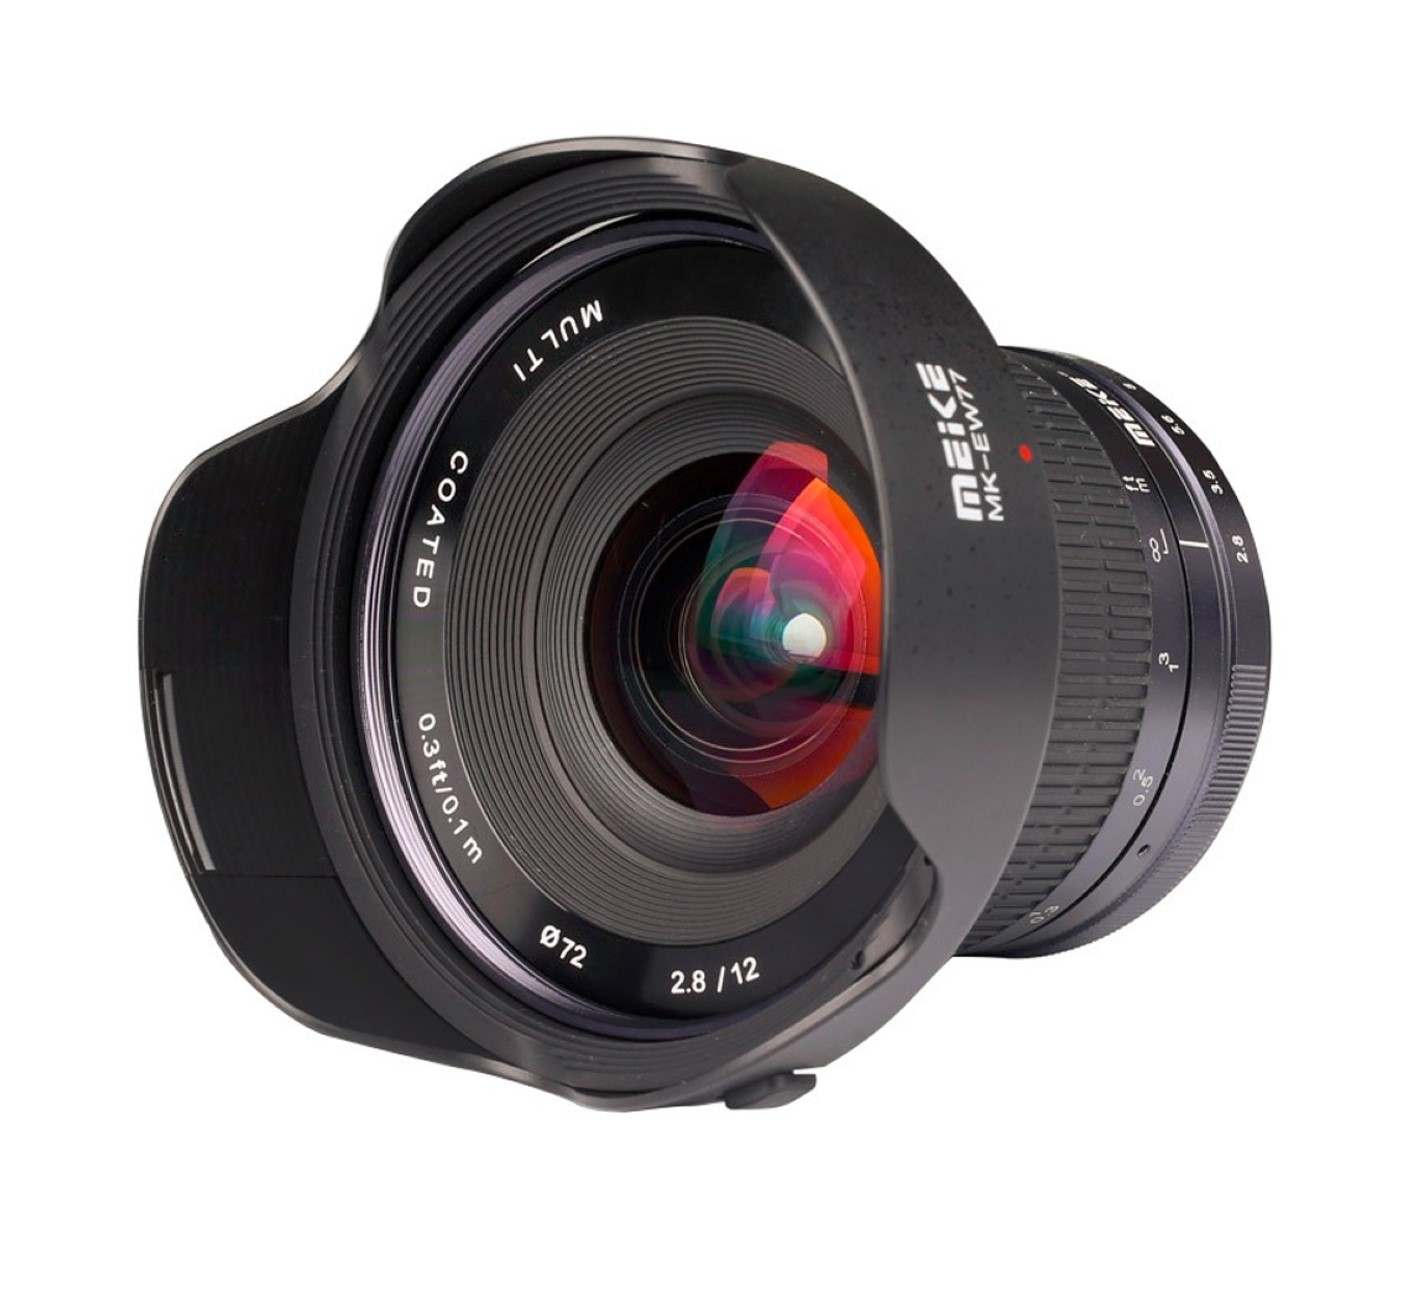 MEIKE 12mm f2.8 für Ultra-Weitwinkelobjektiv, X-Mount, Fujifilm Schwarz